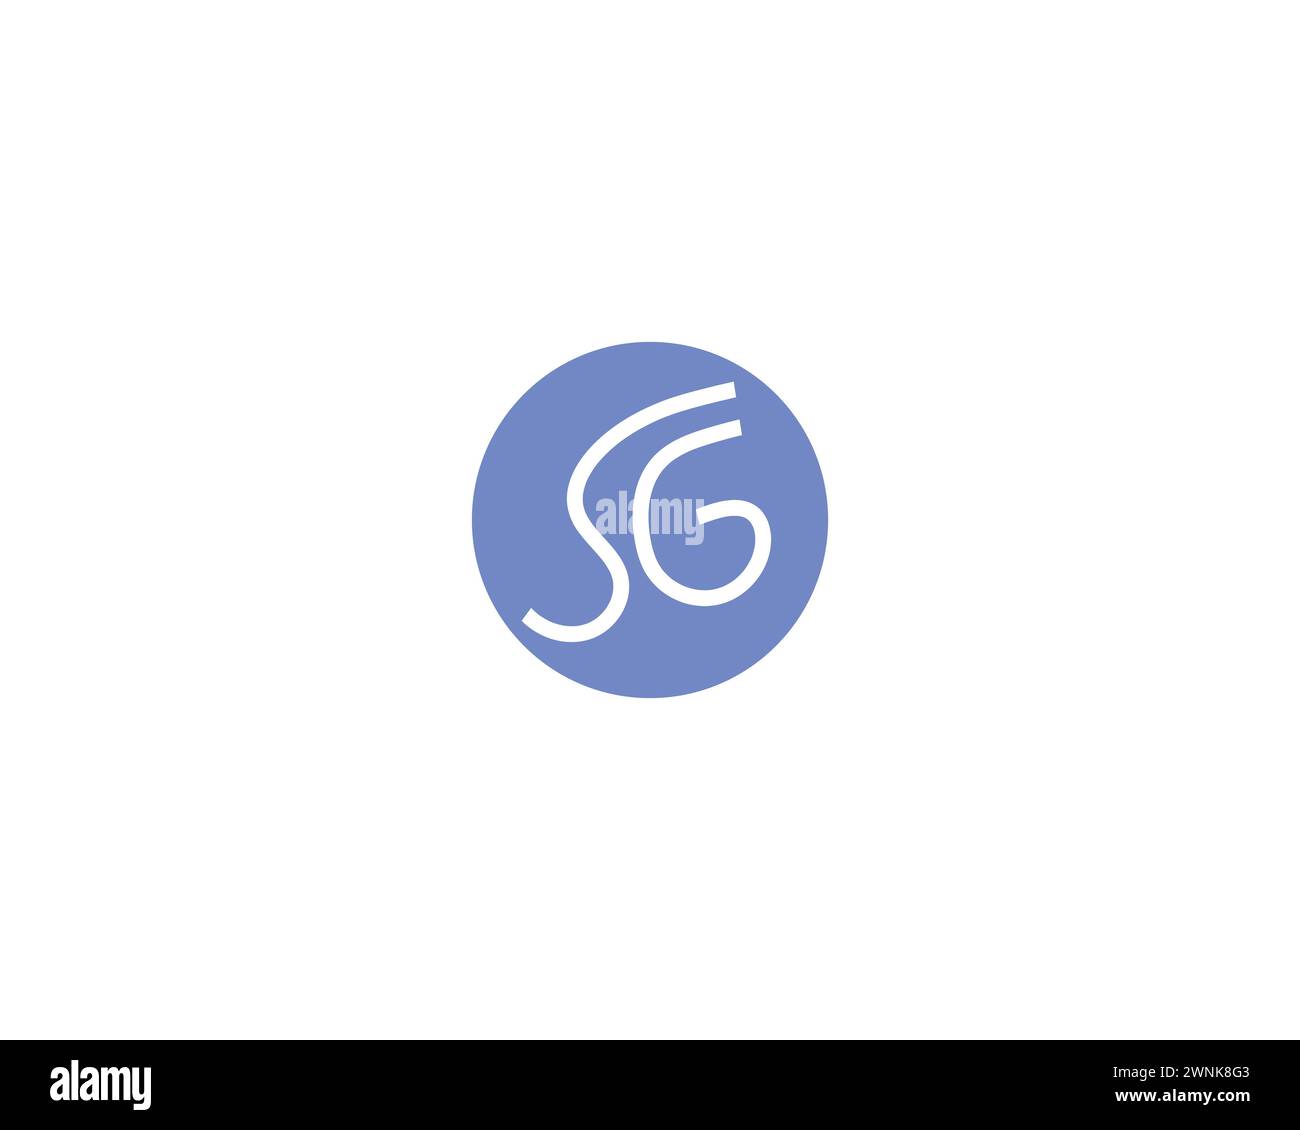 creative letter SG logo design vector template Stock Vector